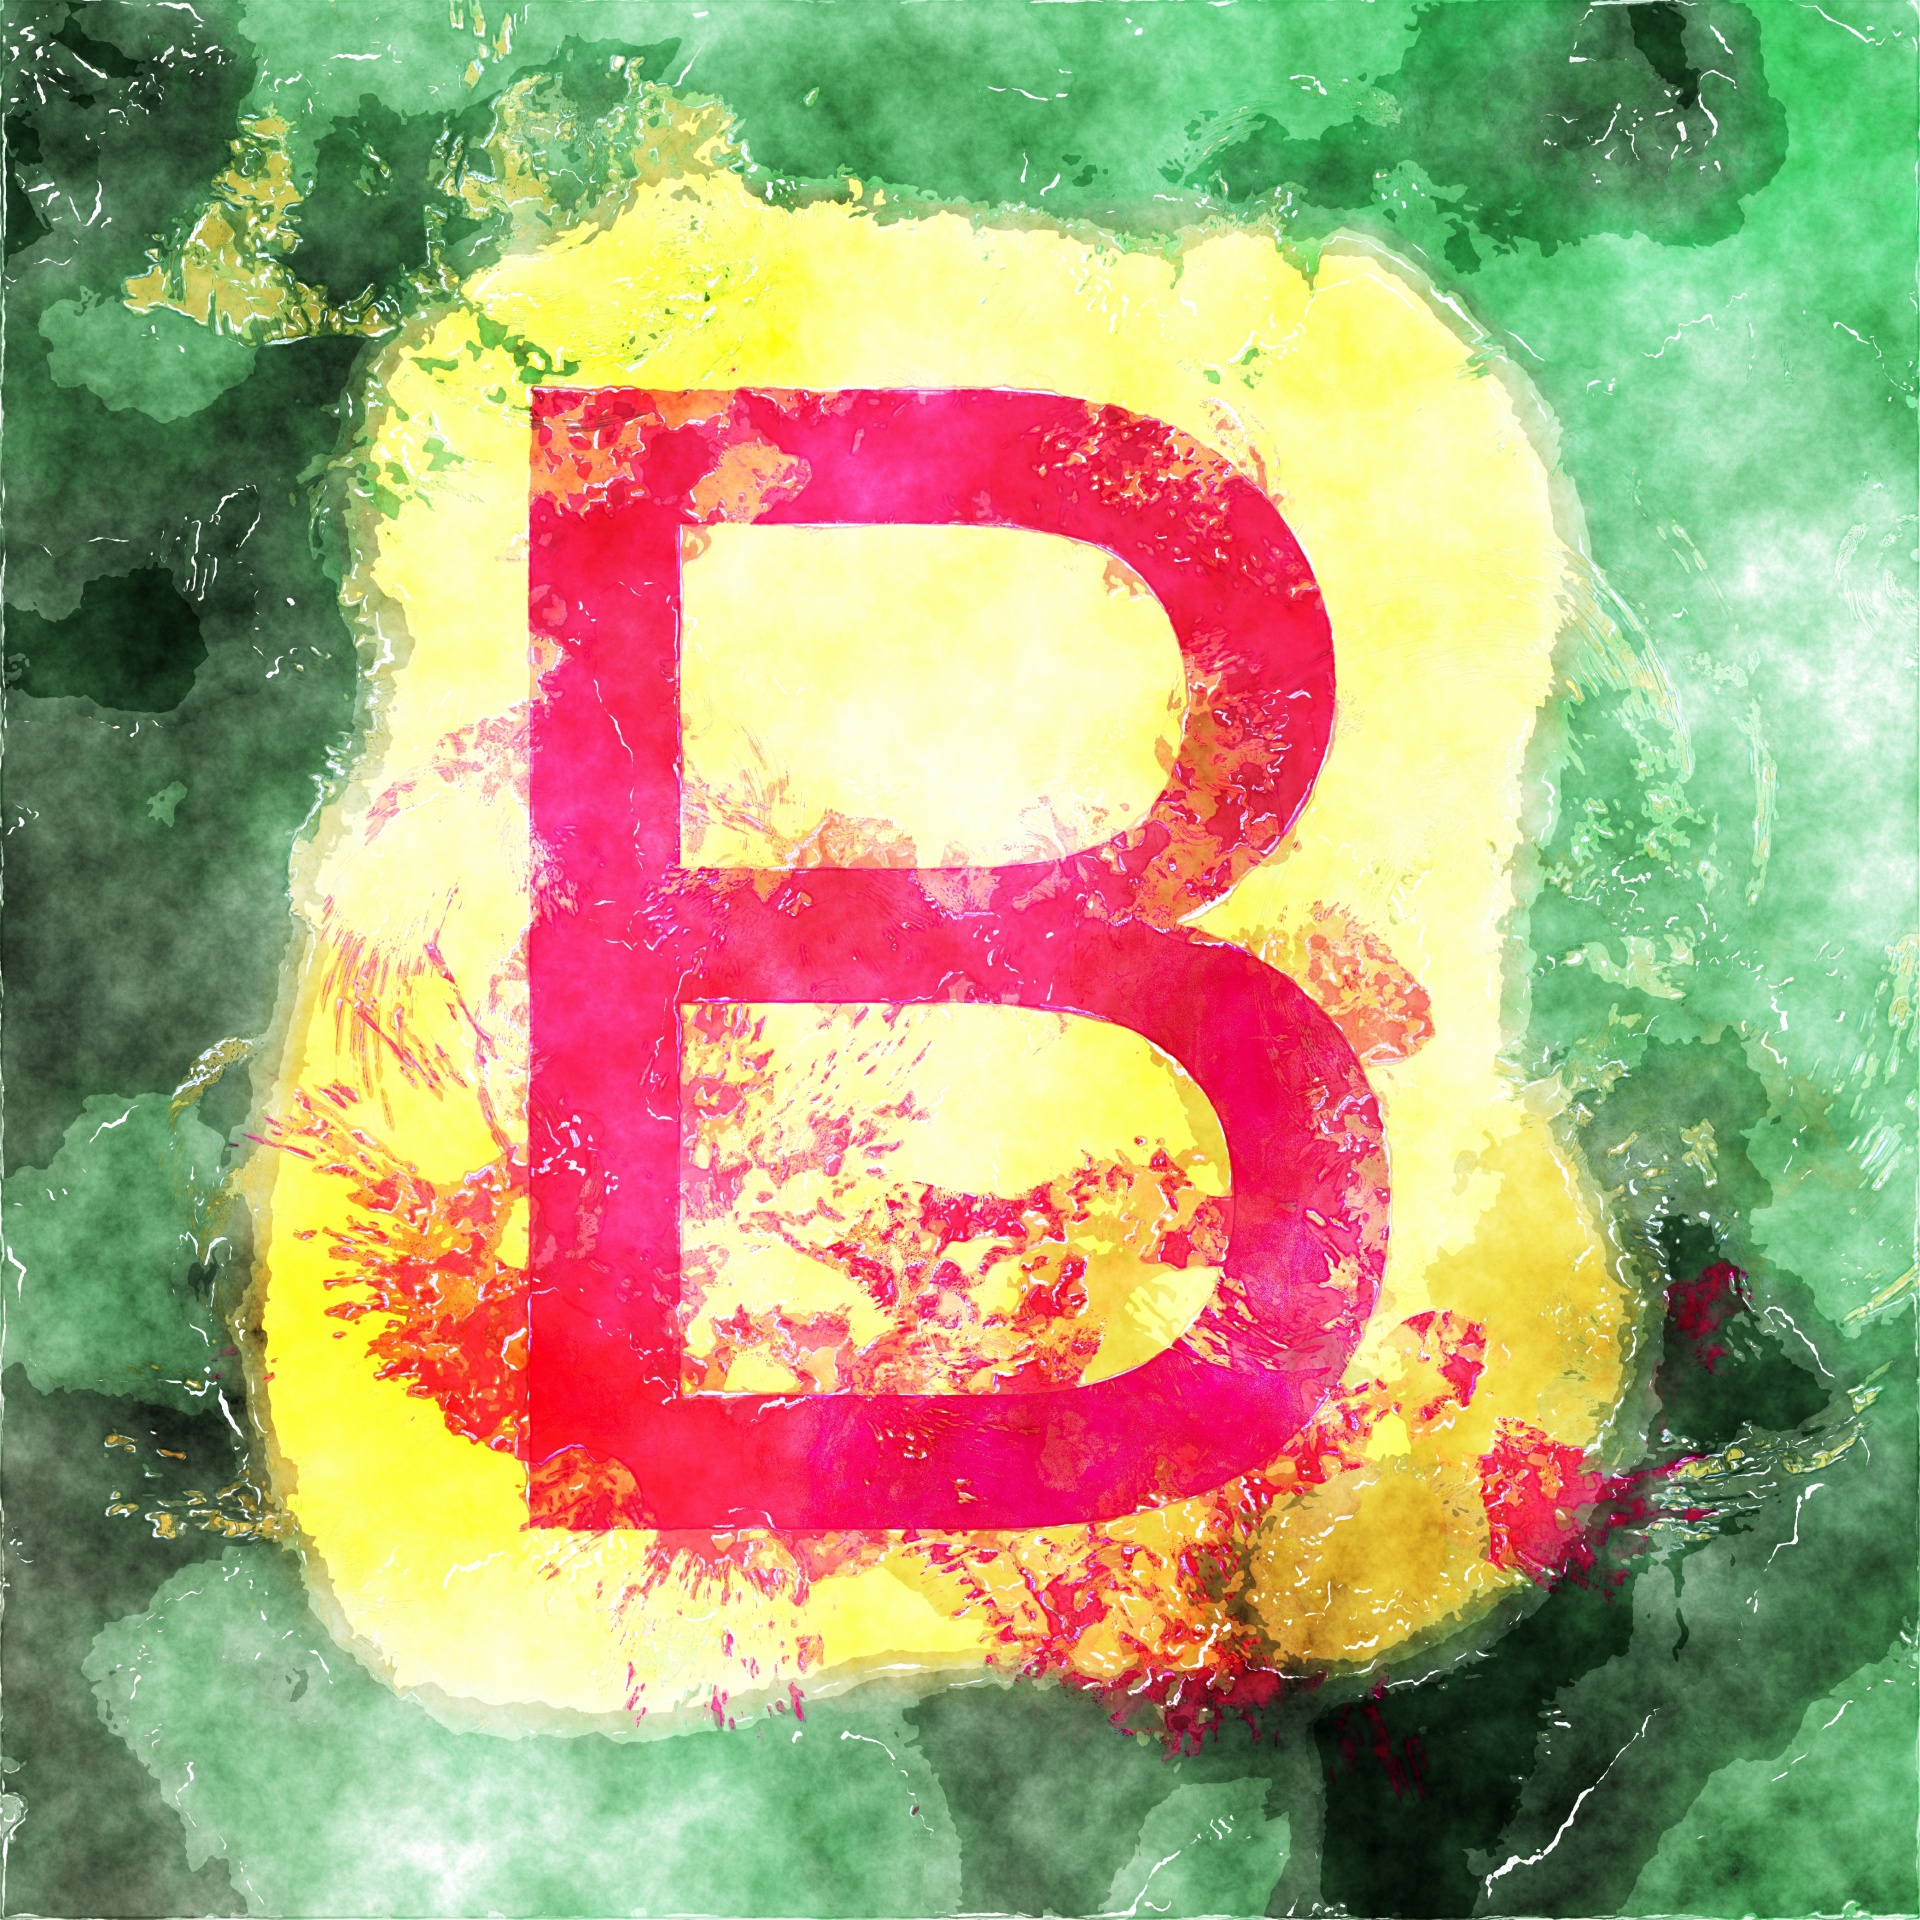 字母b